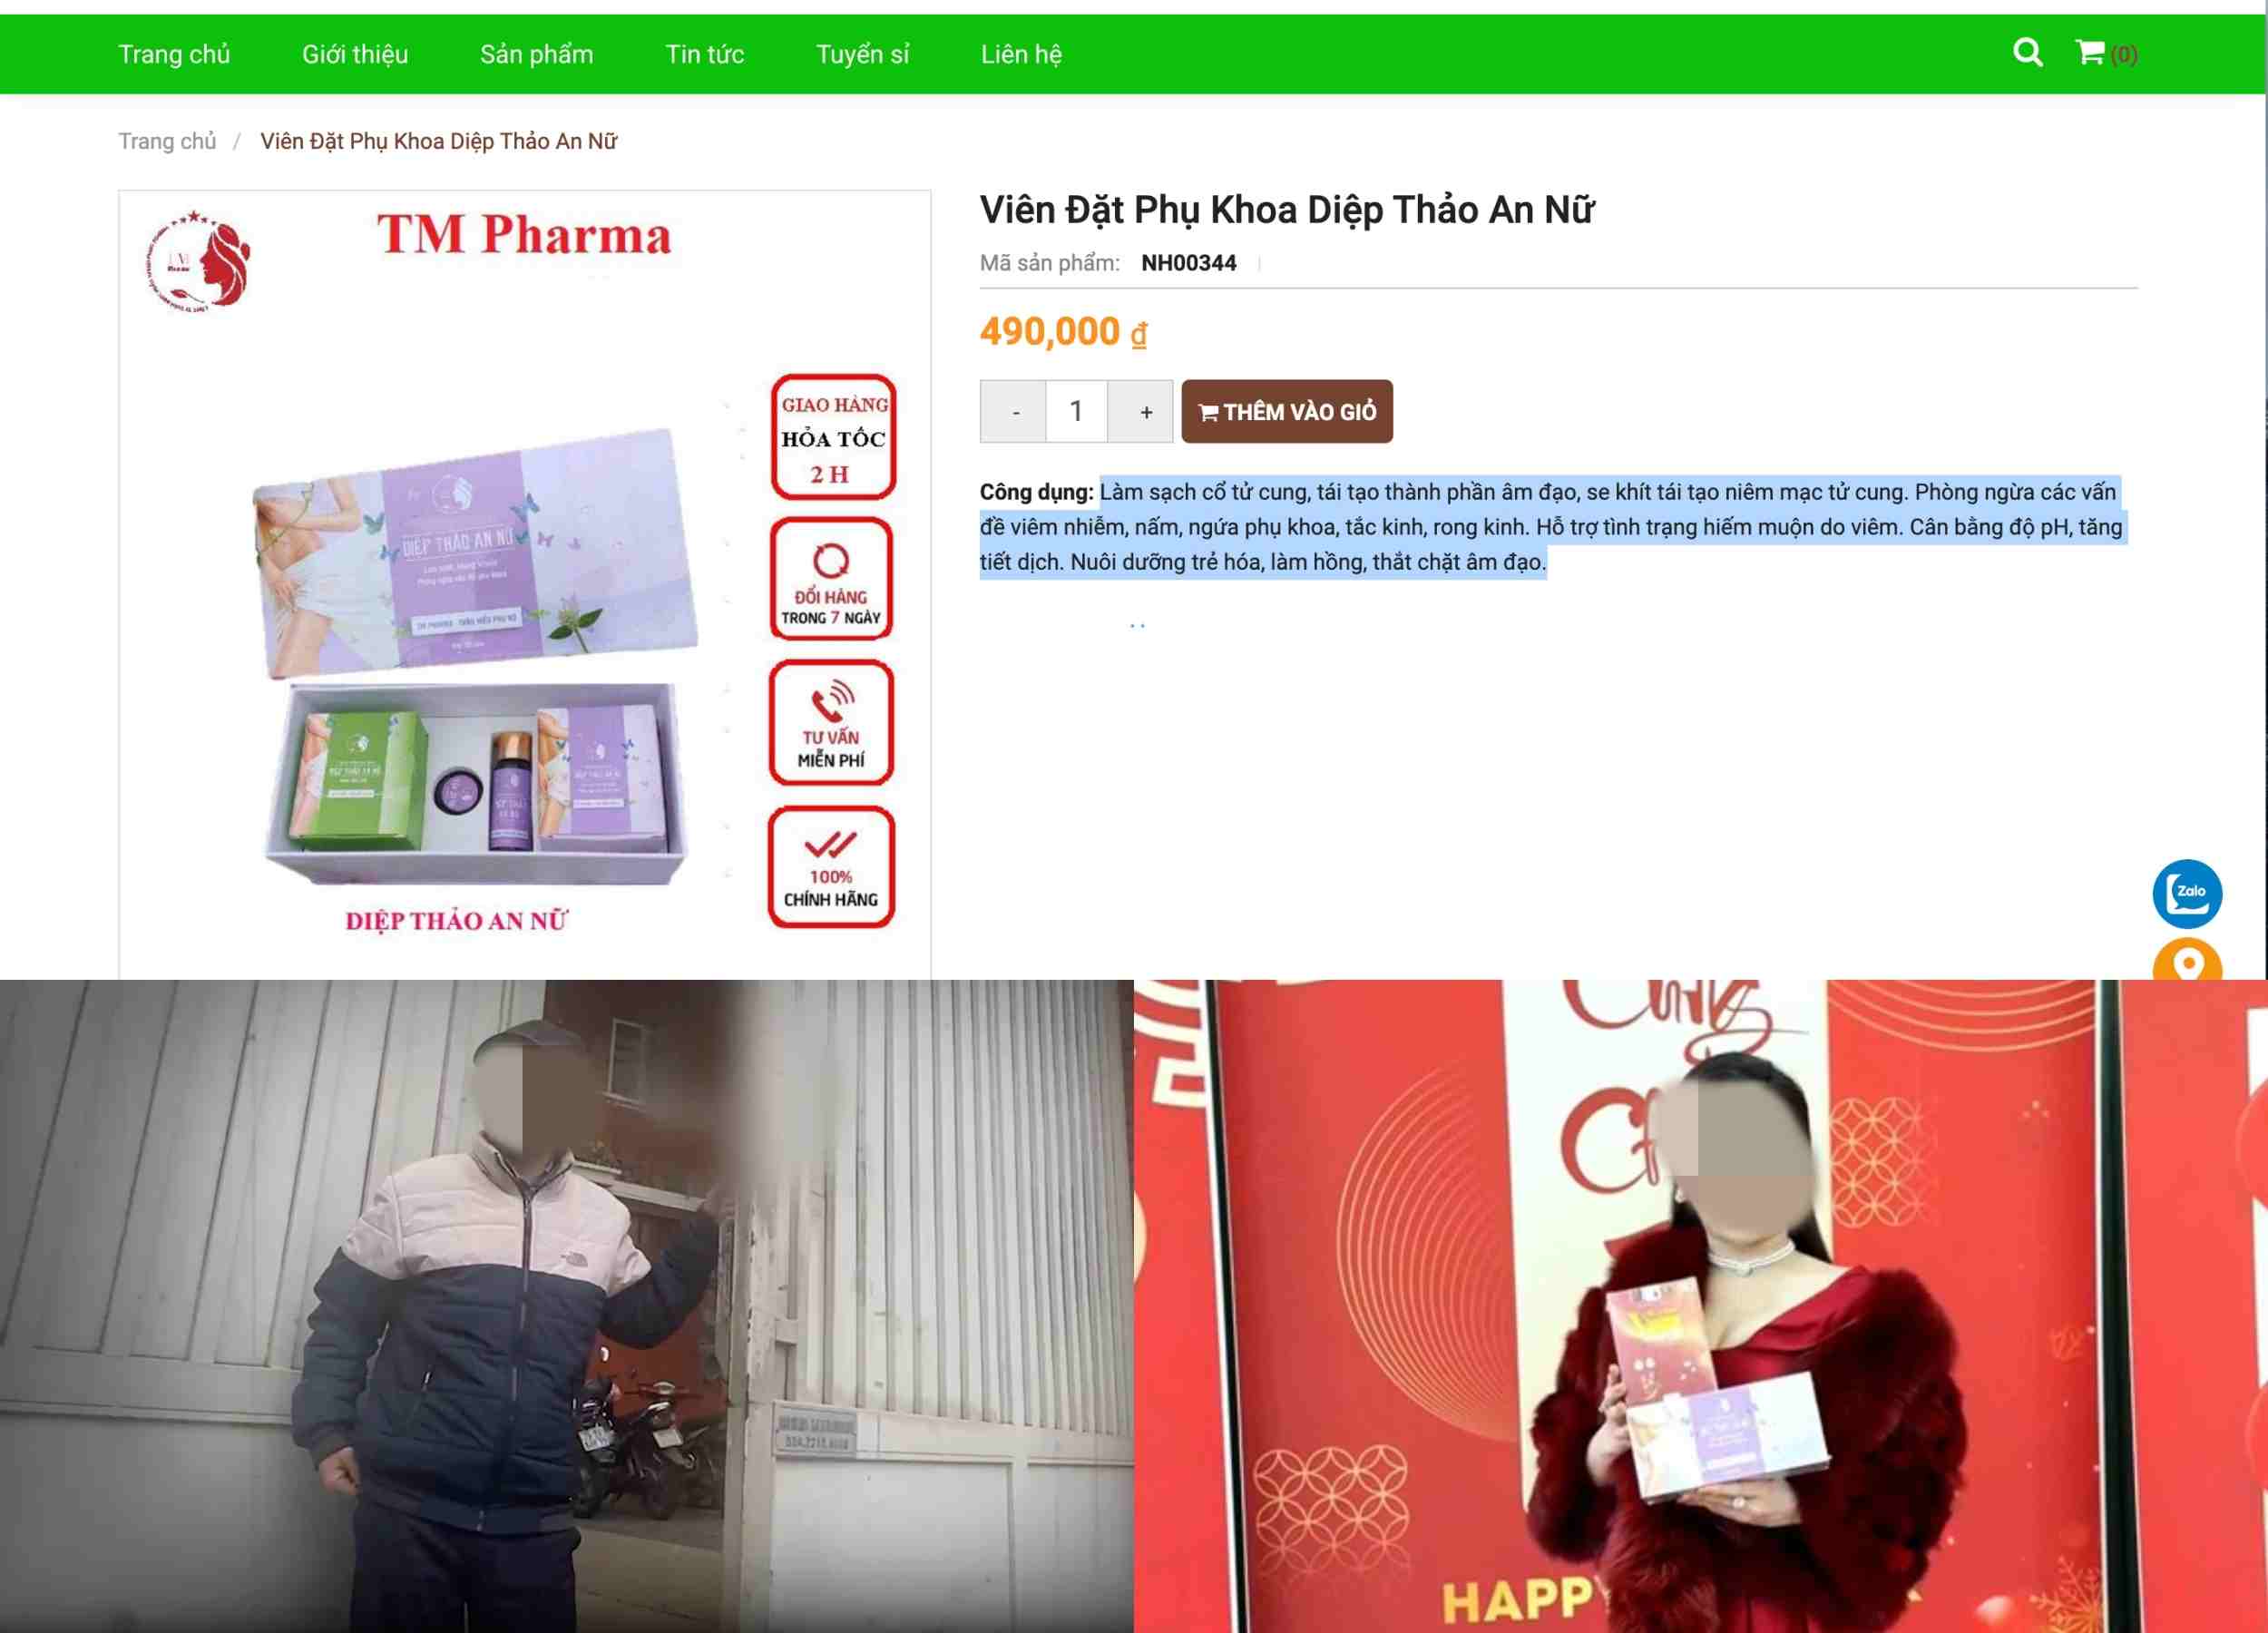 Website, hình ảnh liên hệ và hình ảnh loạt sản phẩm quảng cáo trên website Thanh Mong Pharma. Ảnh: Nhóm PV.